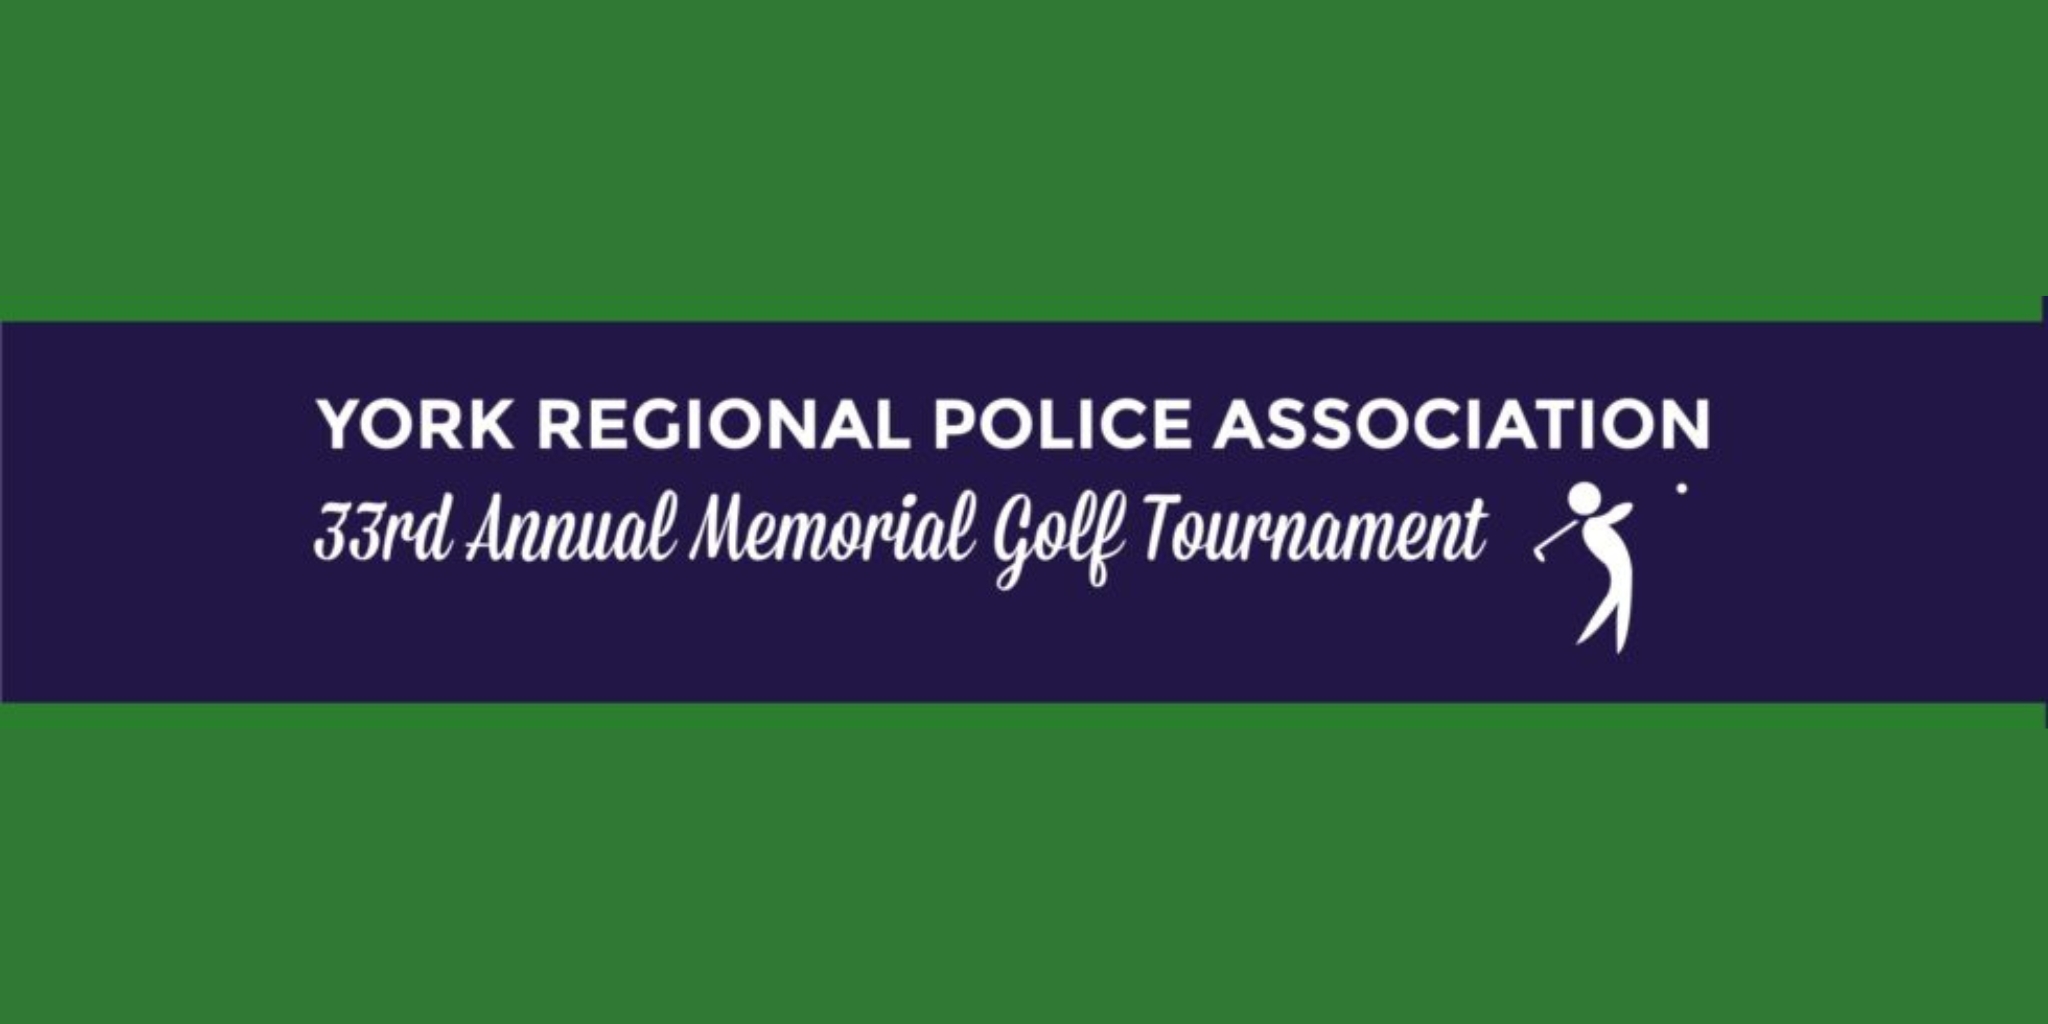 33rd Annual YRPA Memorial Golf Tournament